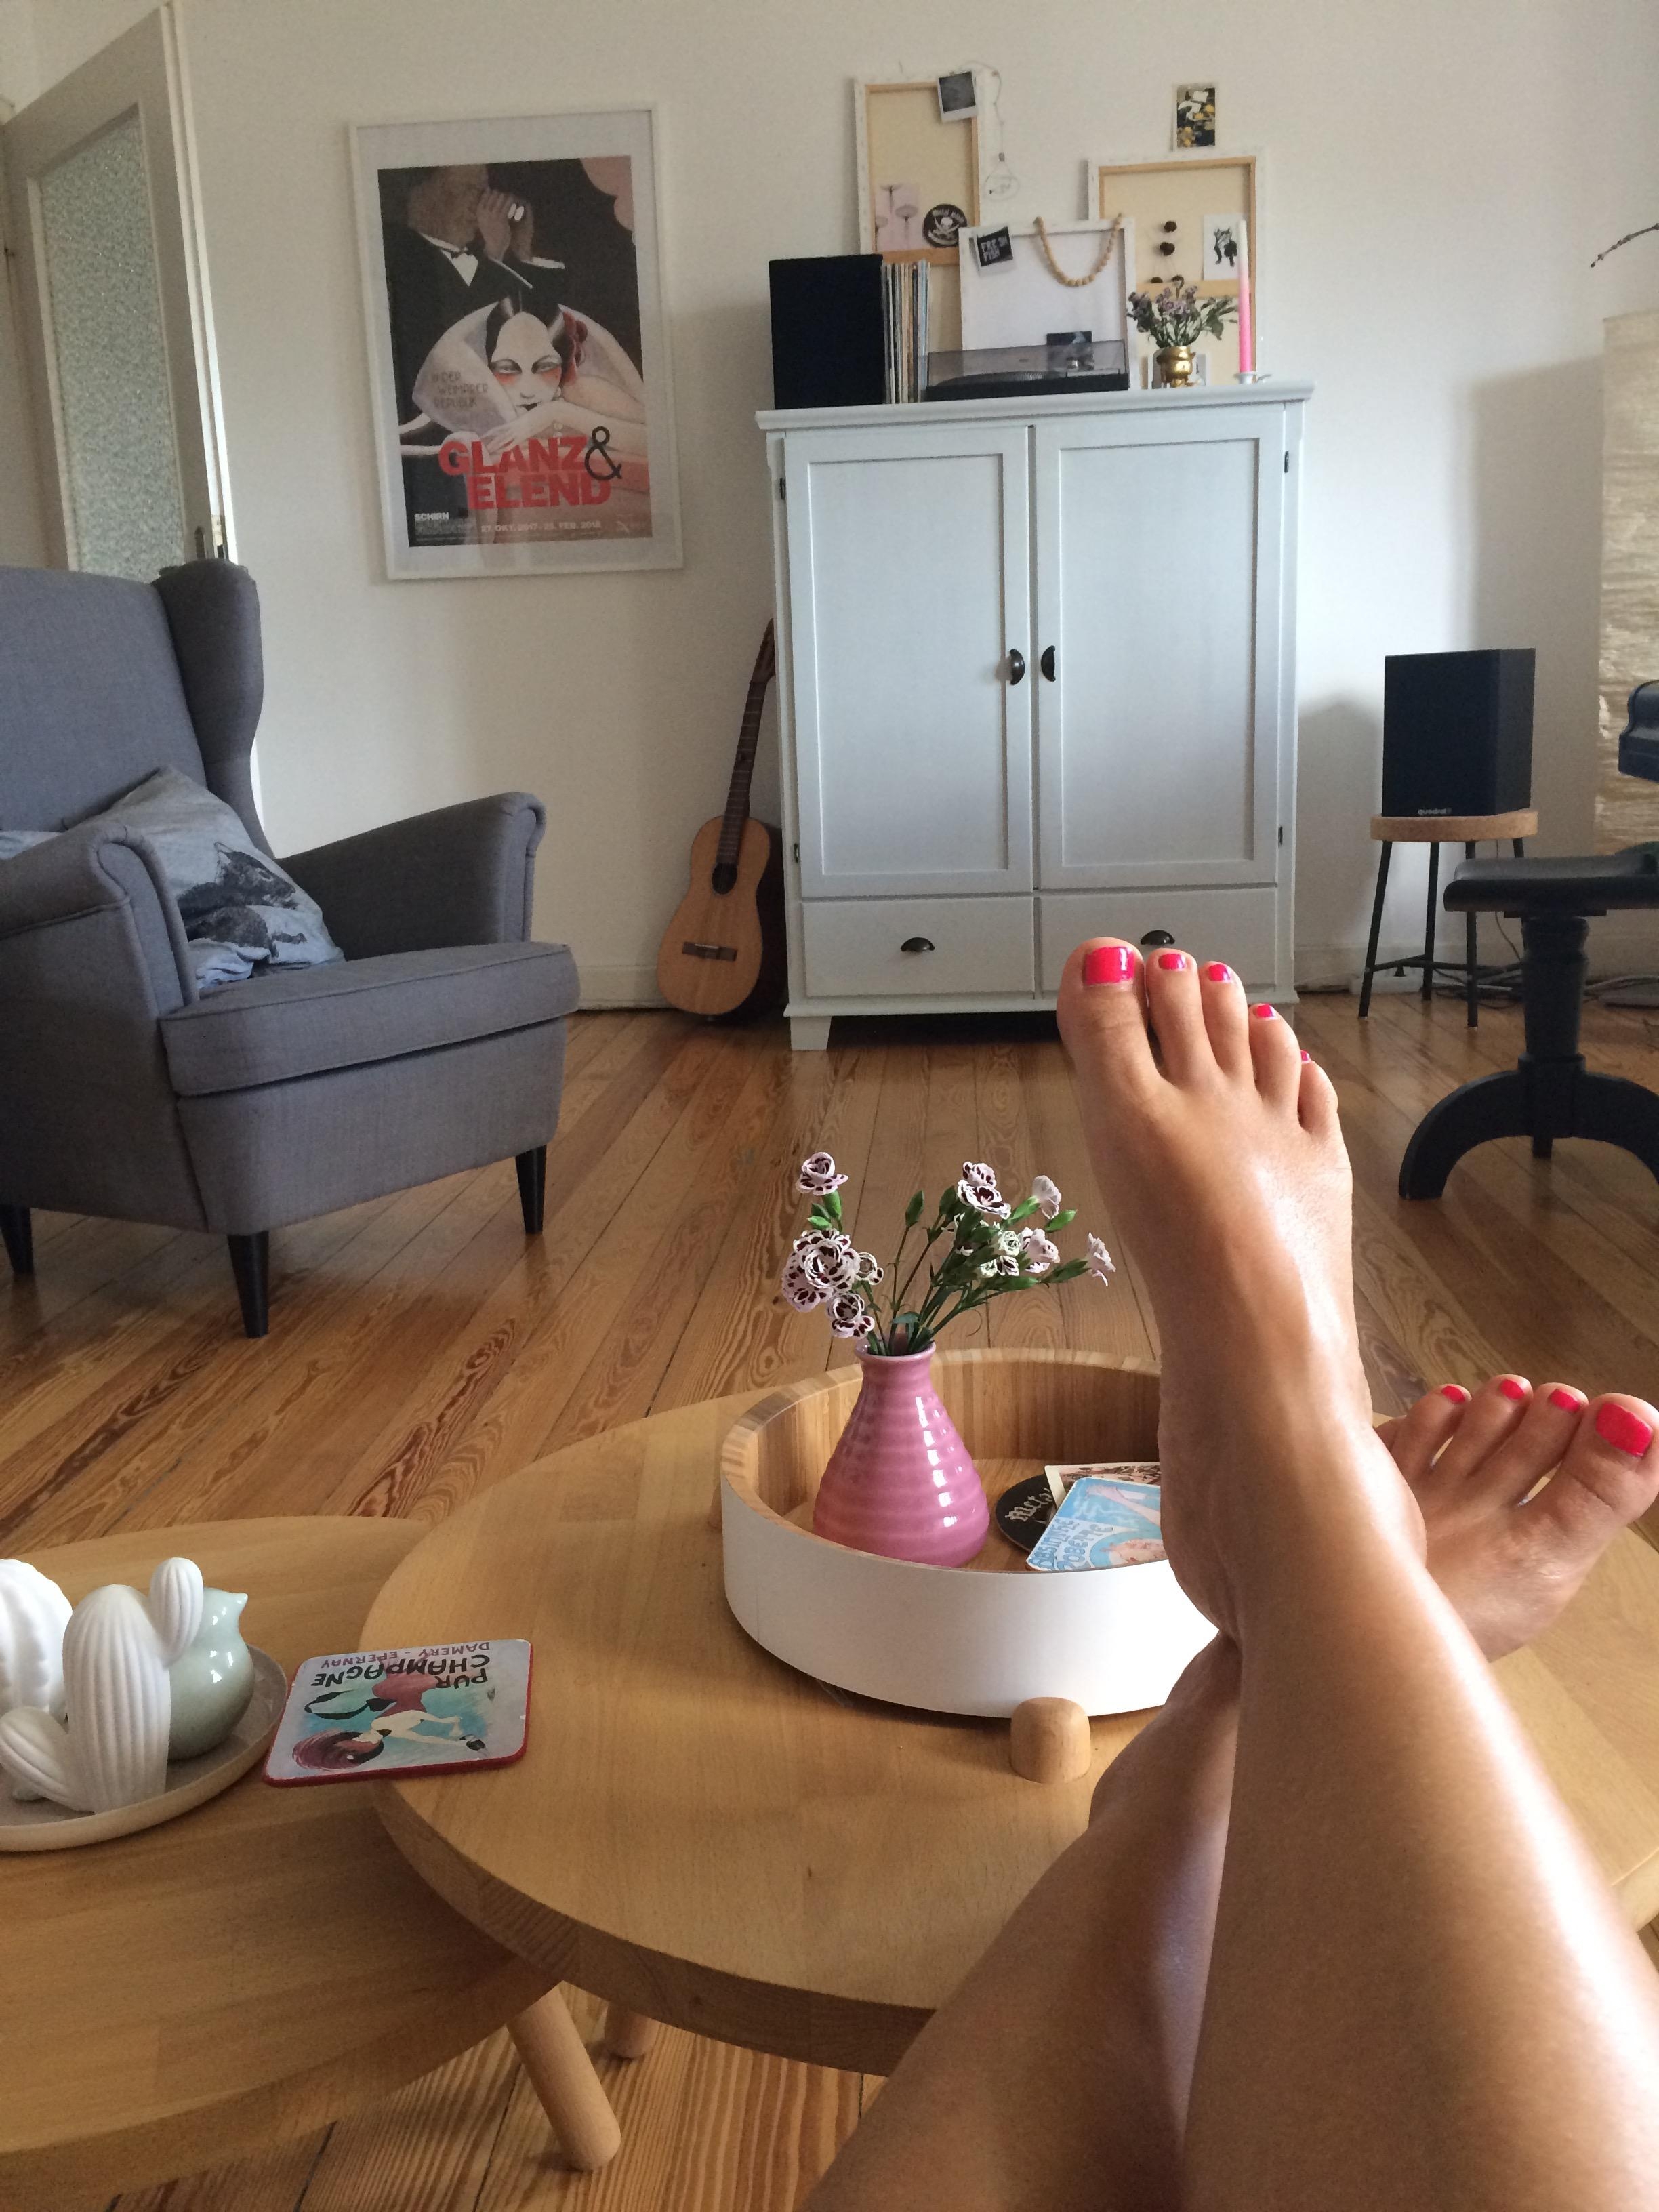 Faul auf dem Sofa (die Arbeit kann warten) #living #interior #wohnzimmer #feetsie #scandinavianstyle #meinikea #hygge